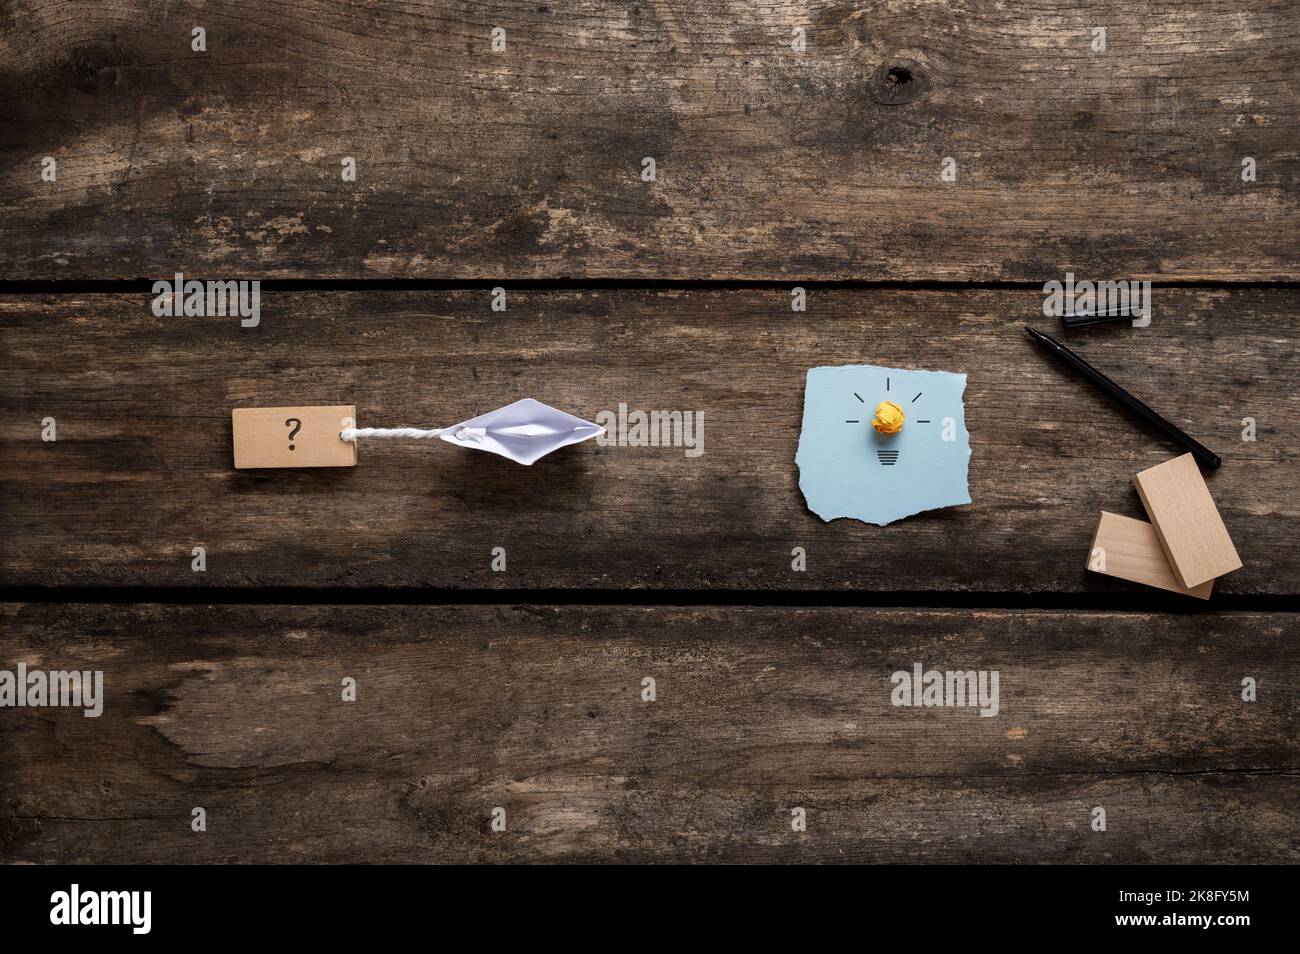 Immagine concettuale della visione e dell'idea di business e della strada verso l'obiettivo - origami fatto barca di carta tirando un segno punto interrogativo verso una lampadina. Foto Stock